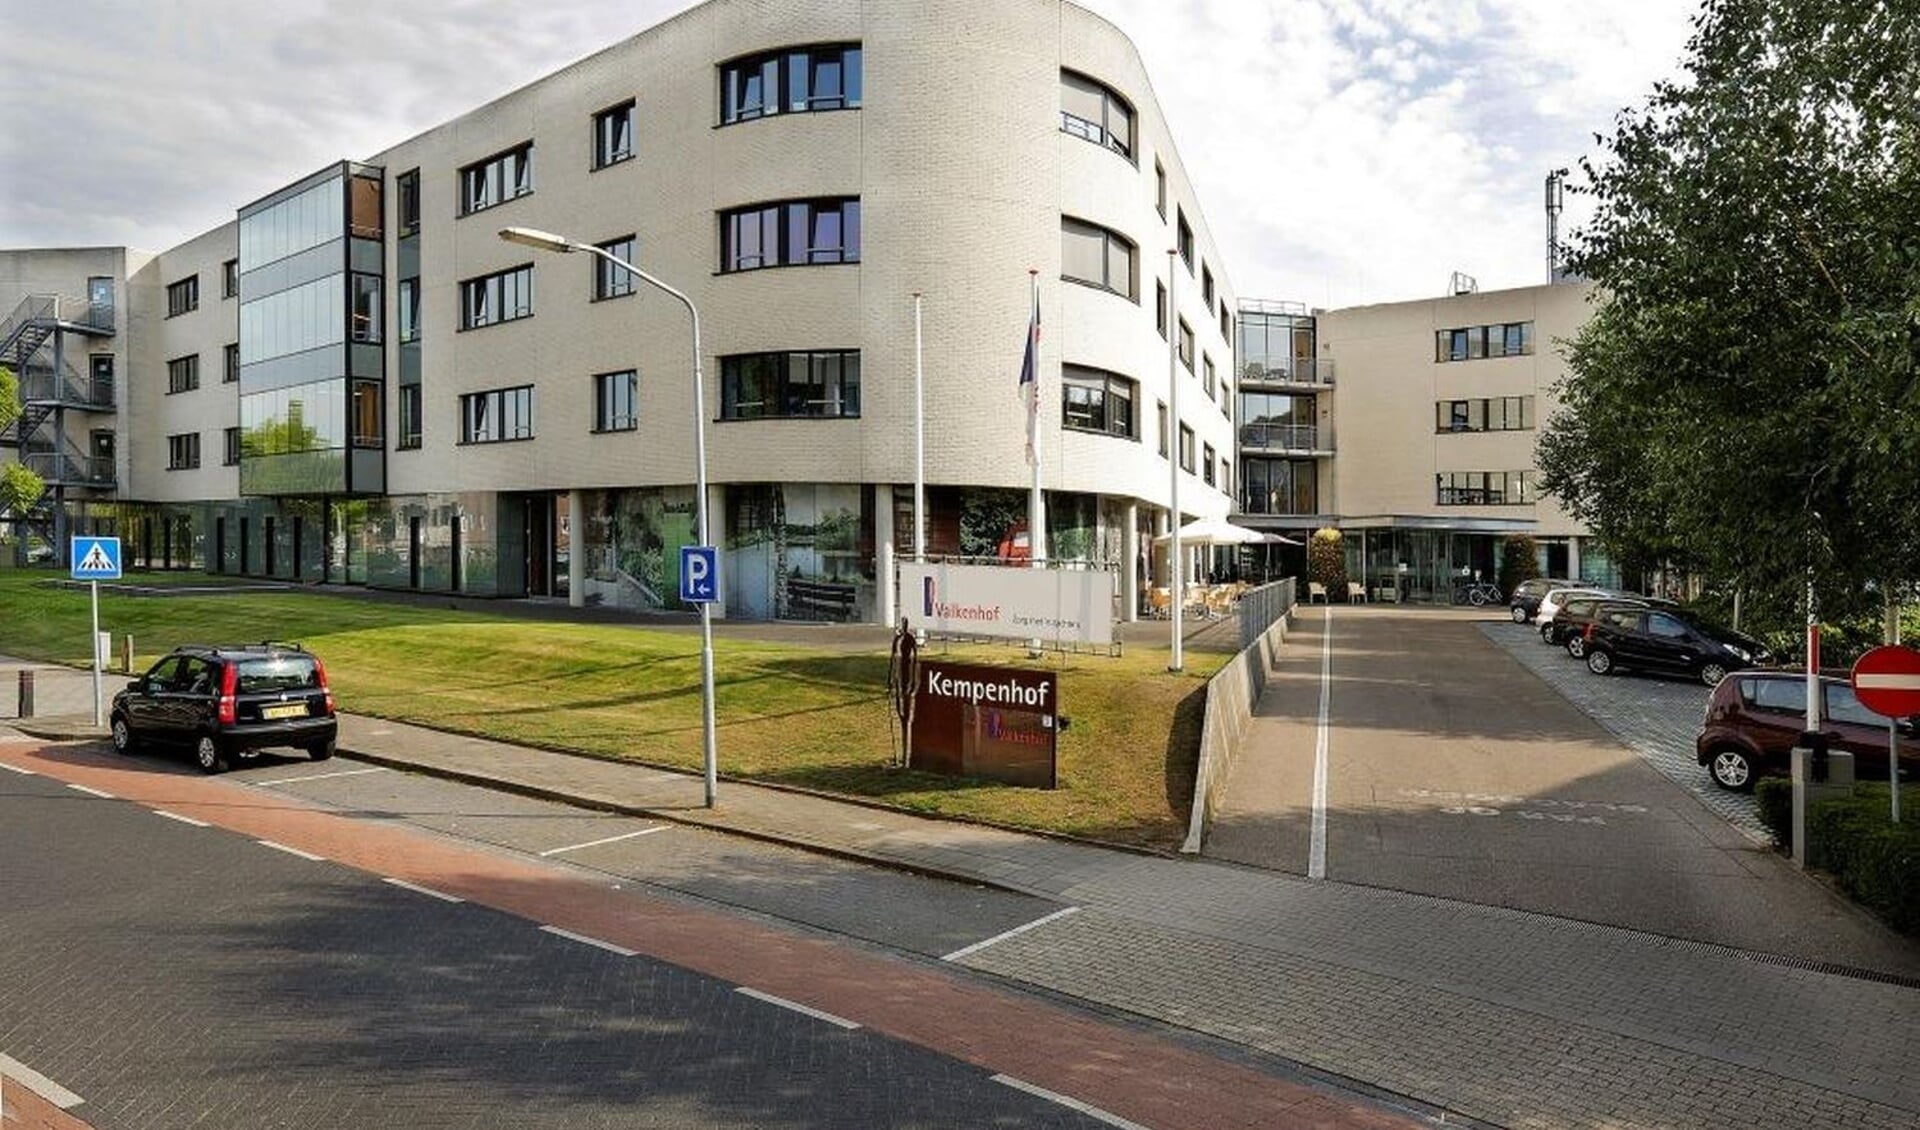 Kempenhof, onderdeel van Valkenhof, is een zorgcentrum voor mensen met somatische (lichamelijke) klachten. 